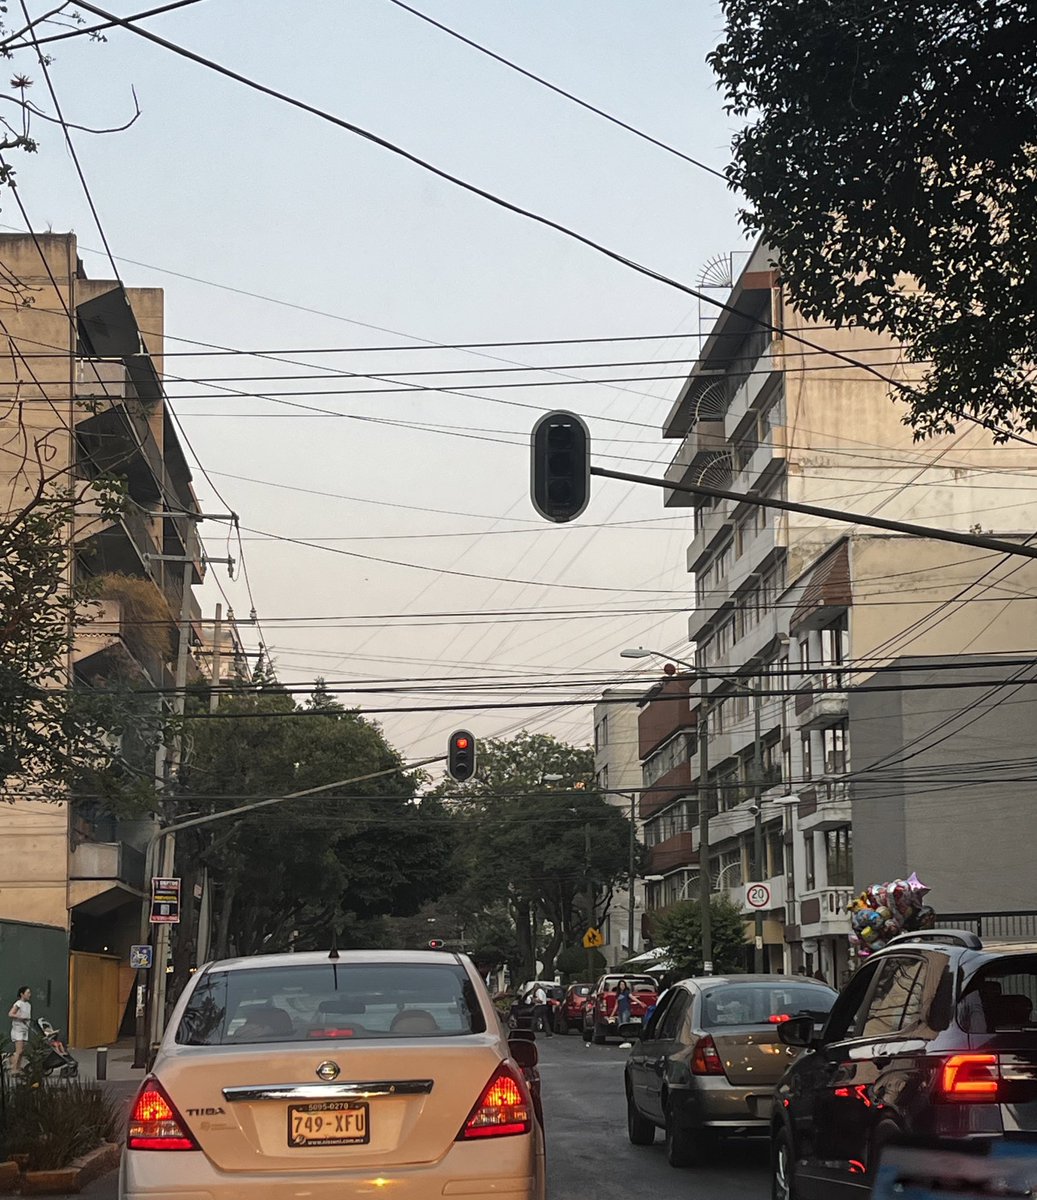 Buenas tardes @UCS_GCDMX @OVIALCDMX solicitamos reparar semáforo descompuesto en la Calle de Parroquia esquina con la Calle Amores, Colonia del Valle.